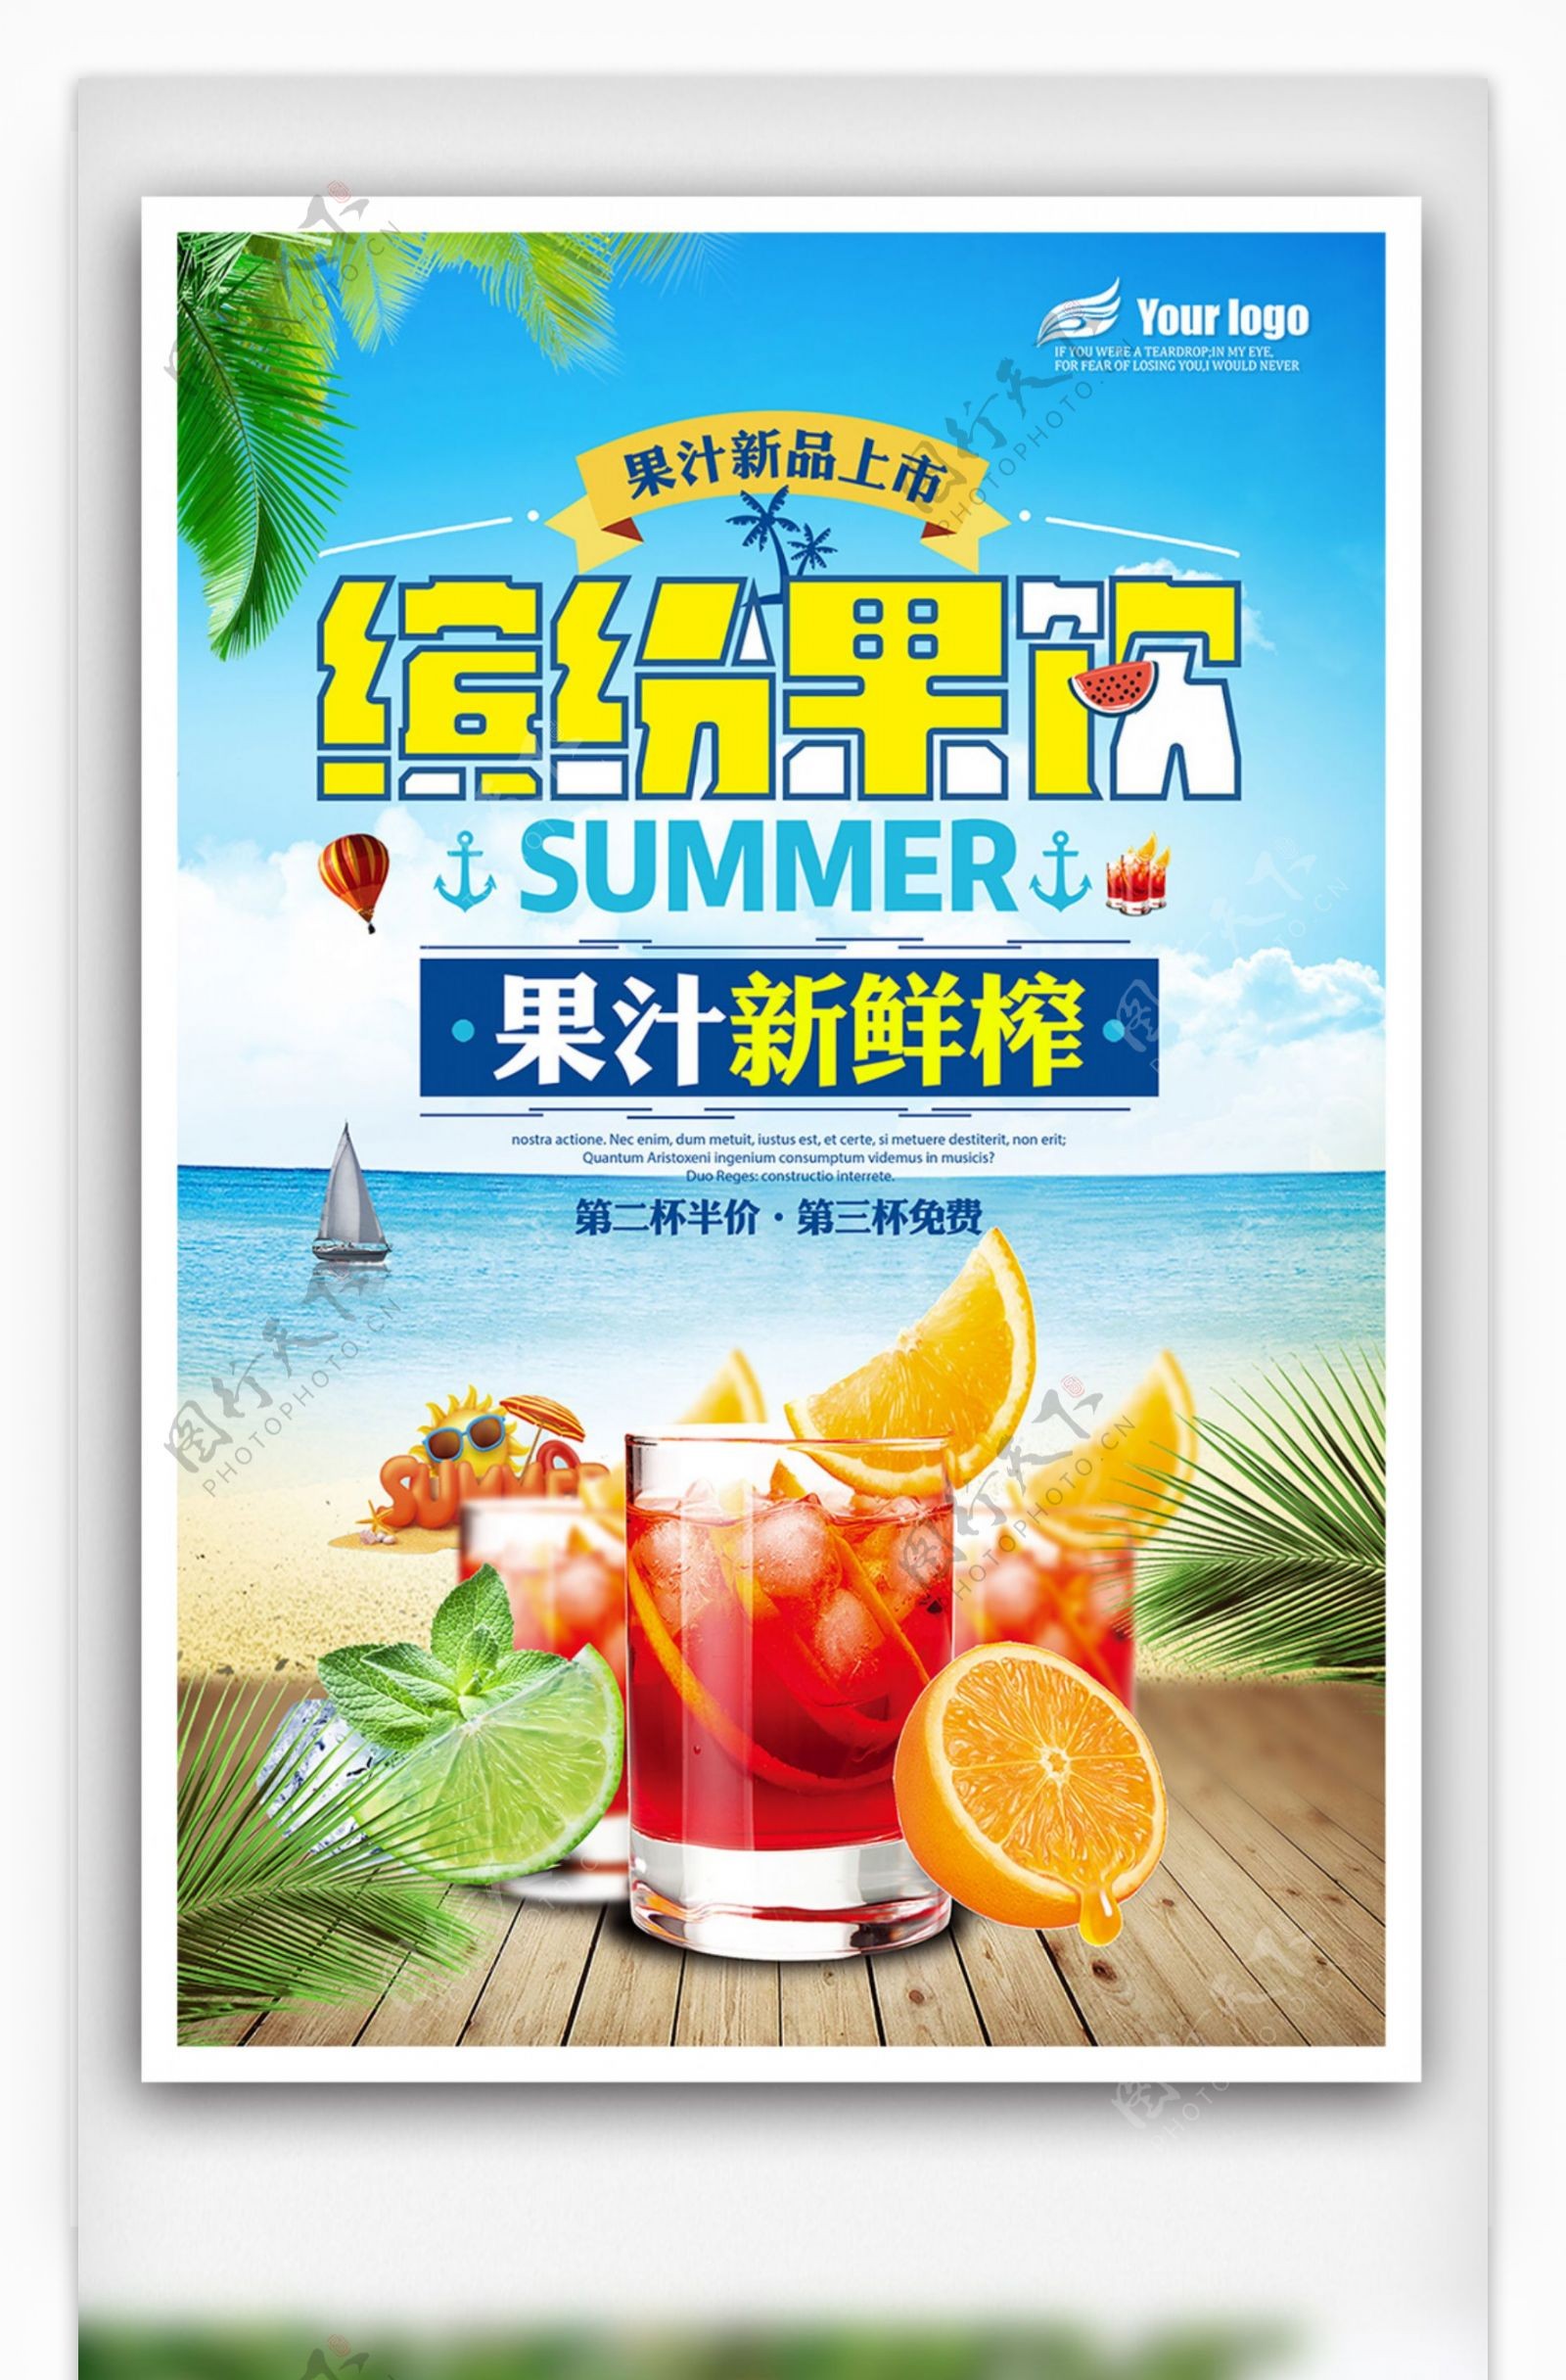 2018年夏日缤纷果汁清新海报免费模板设计